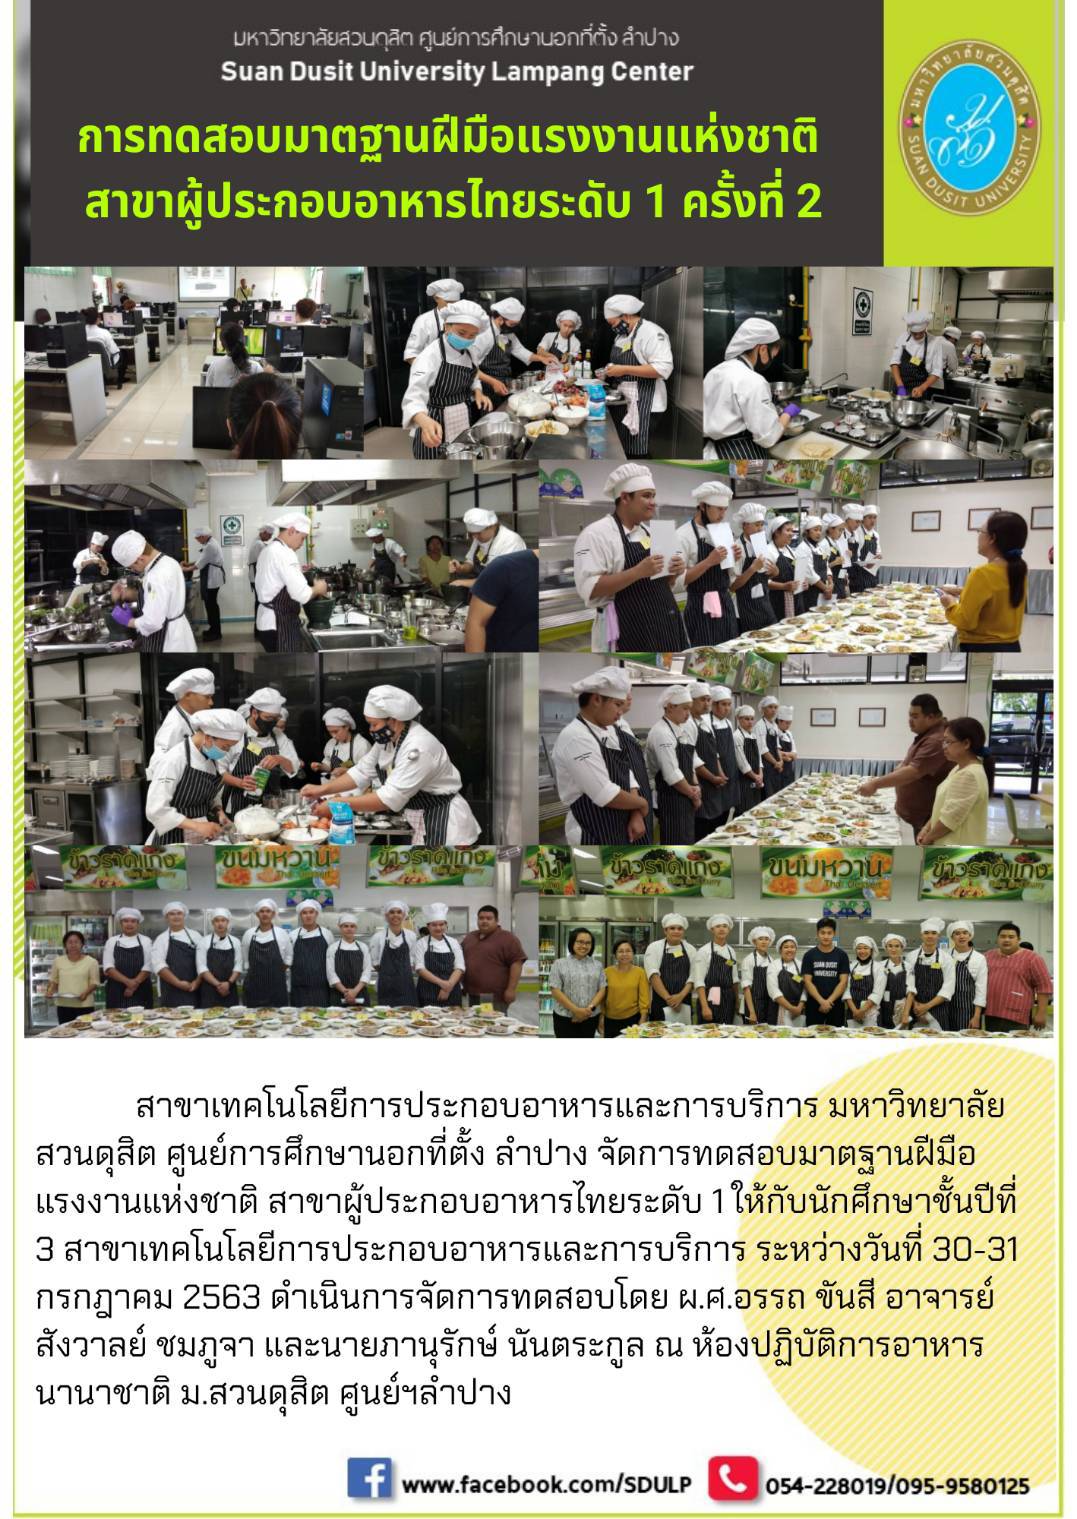 การทดสอบมาตรฐานฝีมือแรงงานแห่งชาติสาขาผู้ประกอบอาหารไทยระดับ 1 ครั้งที่ 2